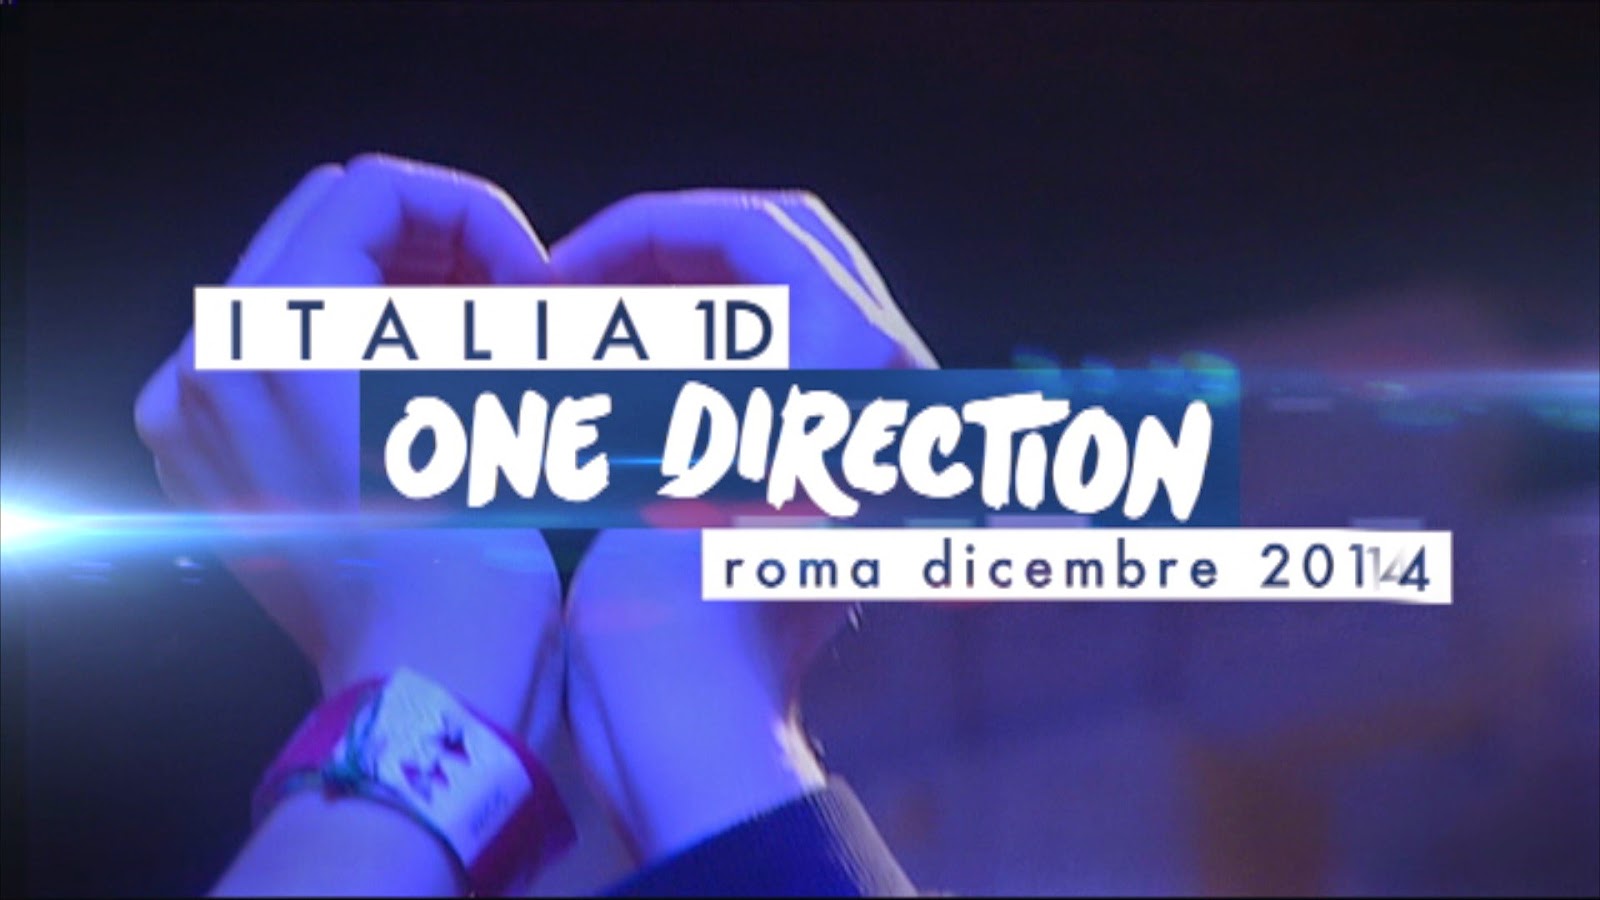 Italia1D - One Direction, stasera su Italia 1 e in radio RTL 102.5